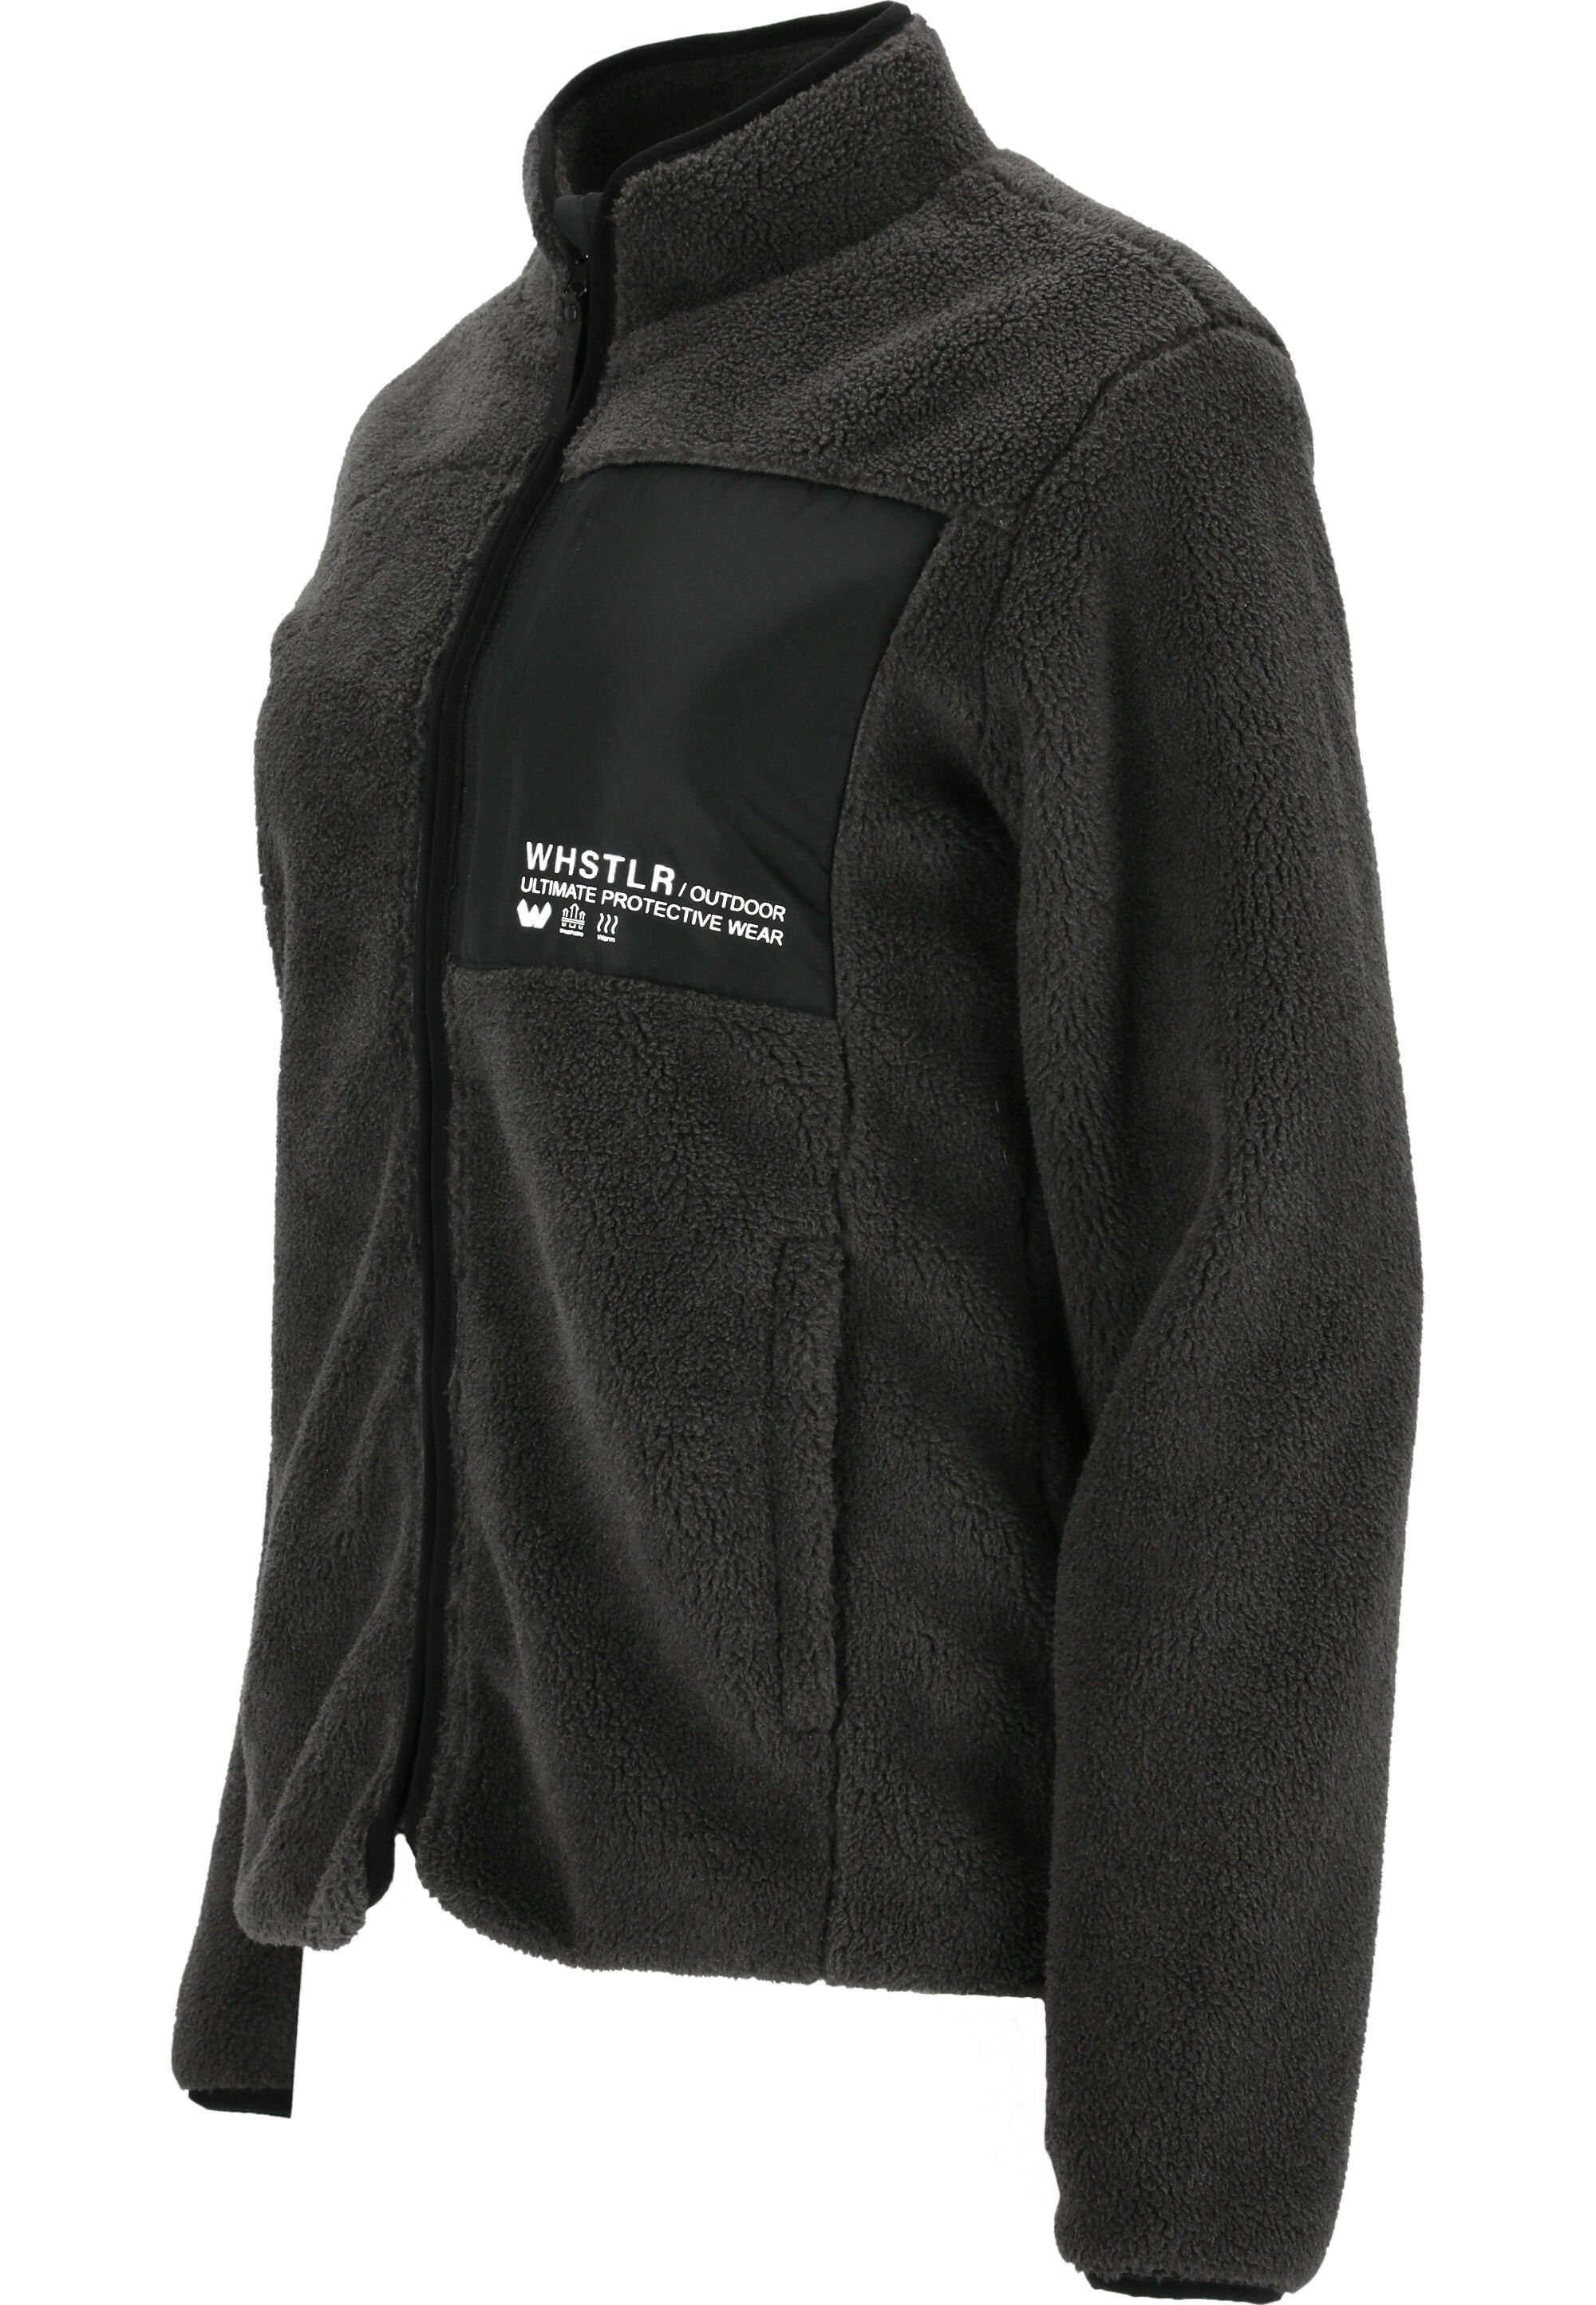 Kontrast-Brusttasche Sprocket mit WHISTLER schwarz Fleecejacke